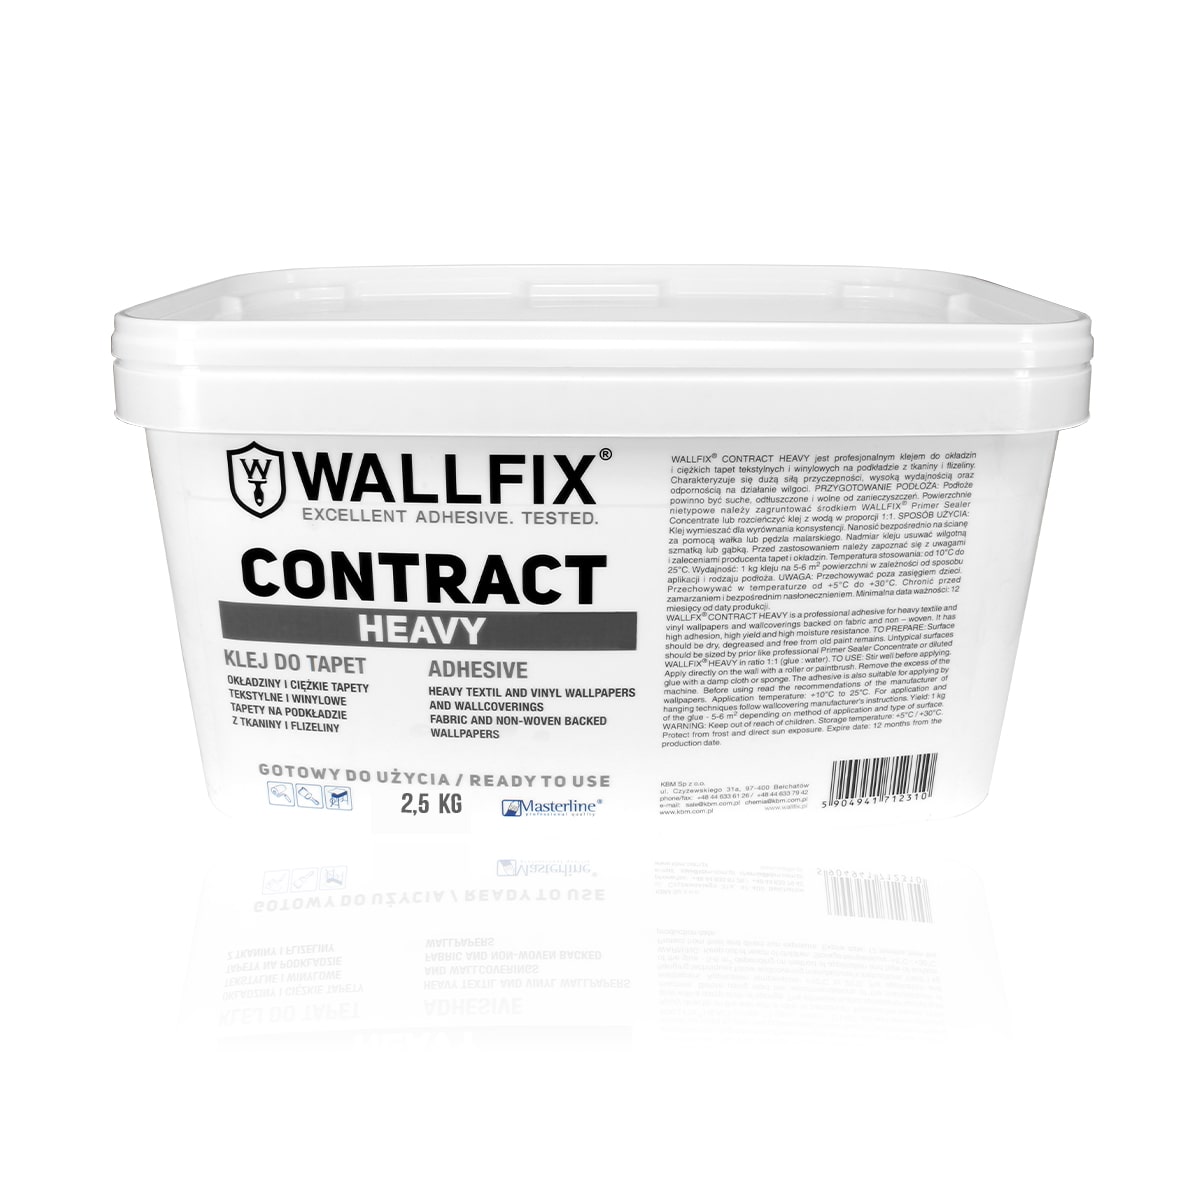 wallfix contract heavy